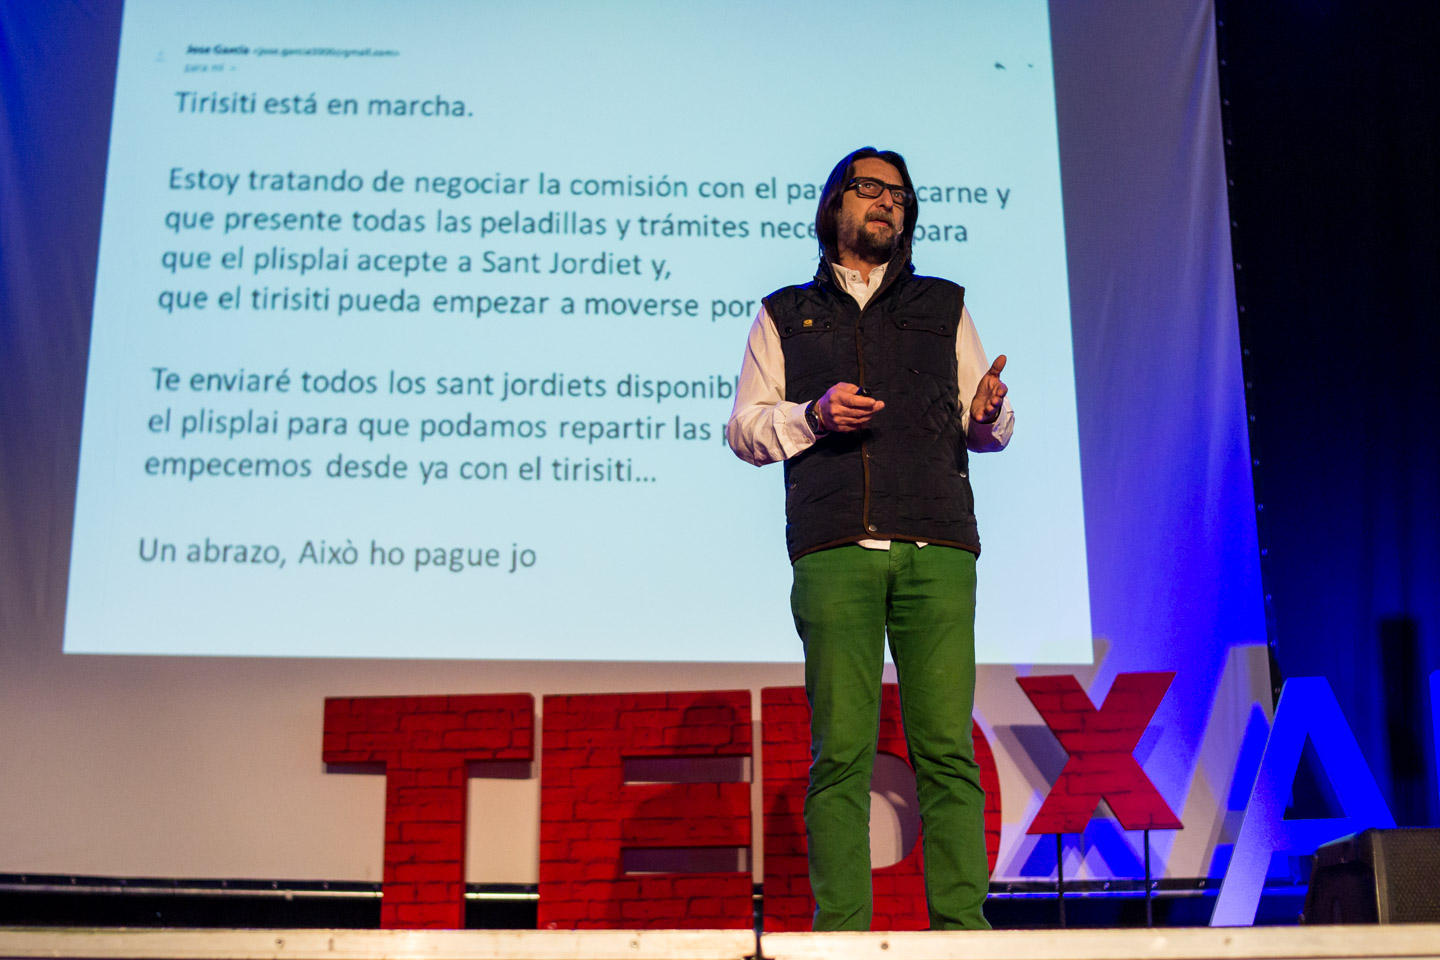 TEDxAlcoi – Ricard Sanz